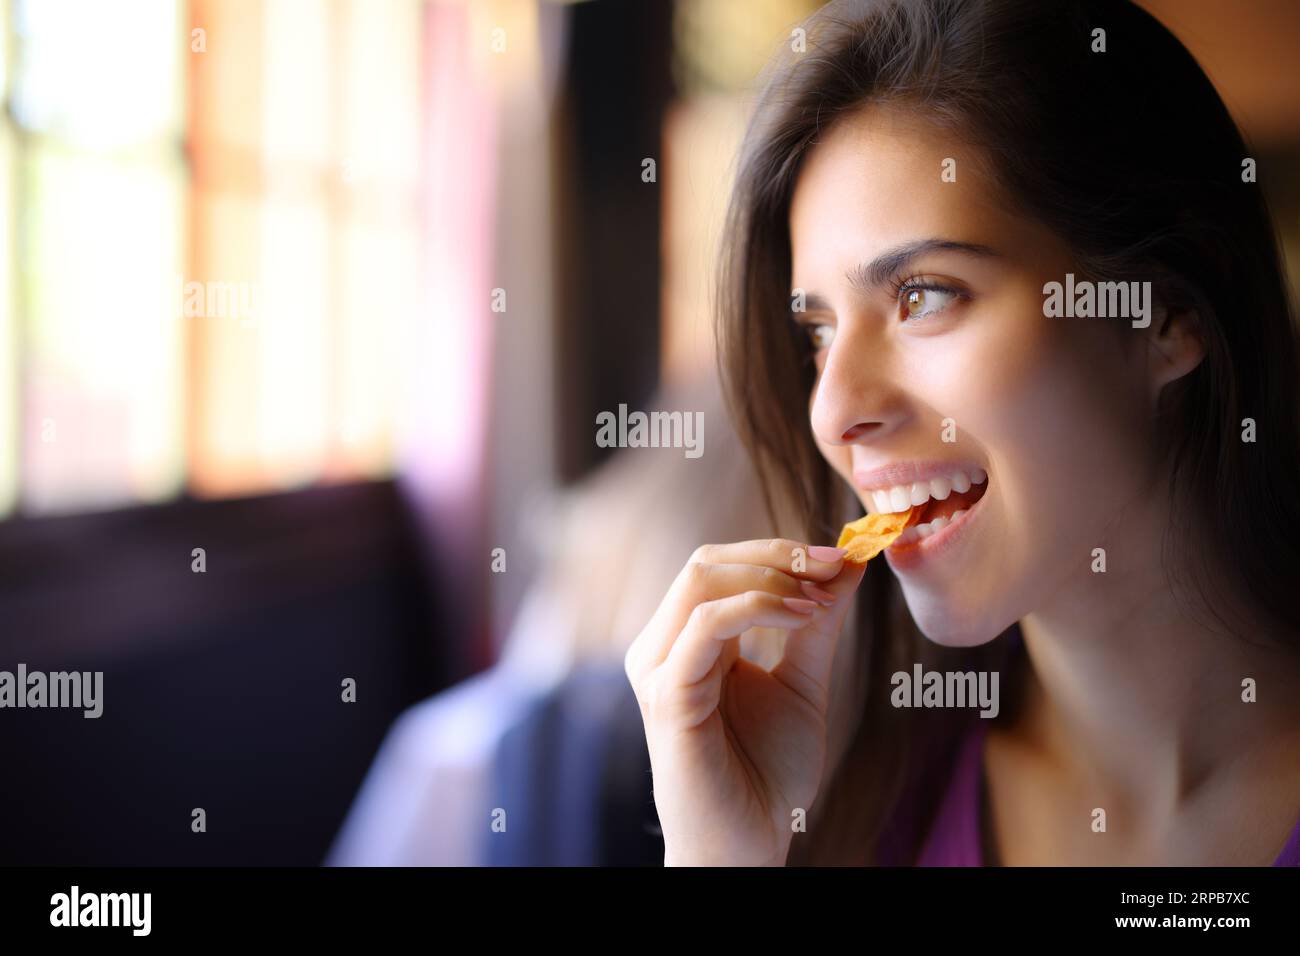 Un client heureux mange des chips et regarde loin par une fenêtre Banque D'Images